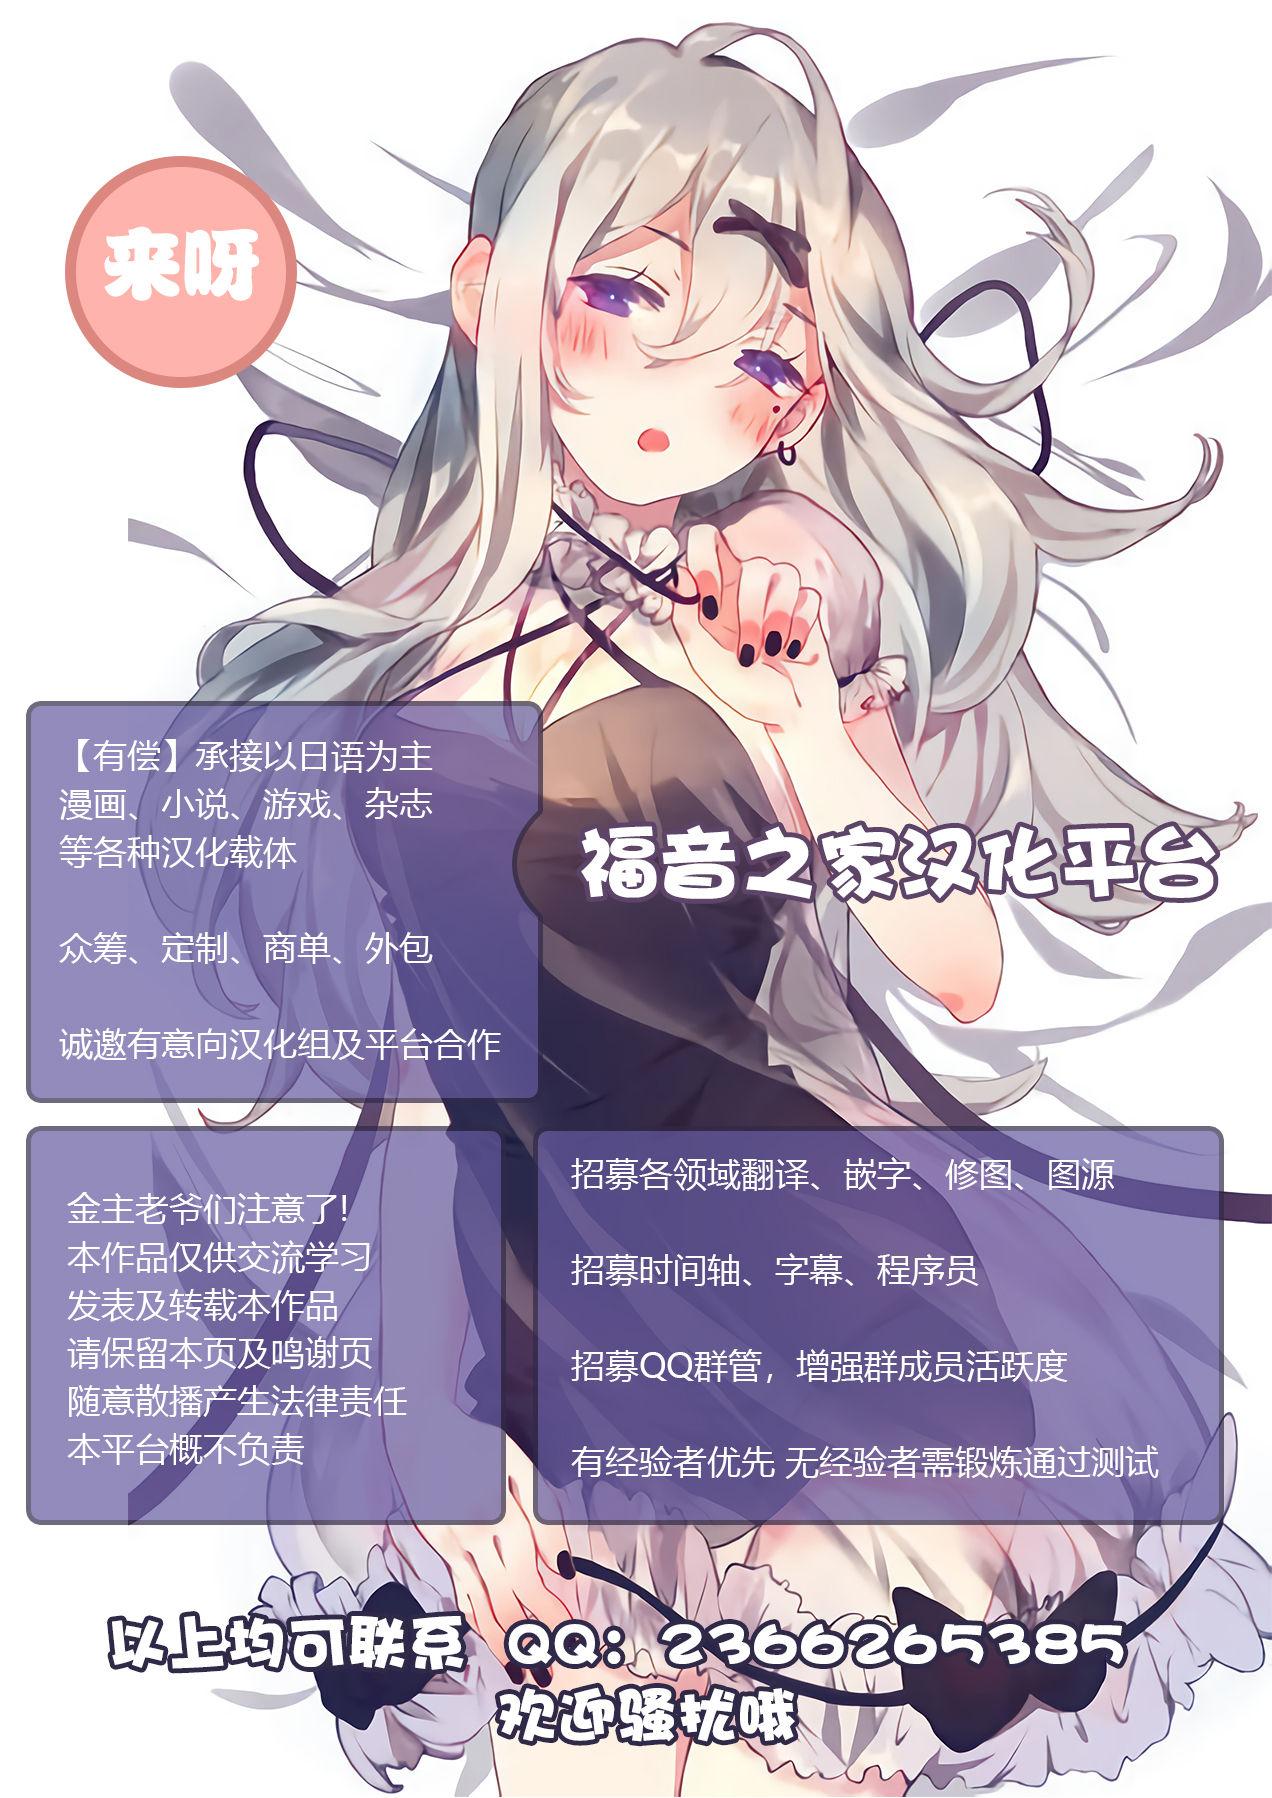 Teenfuns [Umari-ya (D-2)] Kiriko Route Another #04 ~Nyotai Seikan Poruchio Kaihatsu Hen~ (Sword Art Online)[Chinese]【不可视汉化】 - Sword art online Hot Wife - Page 36